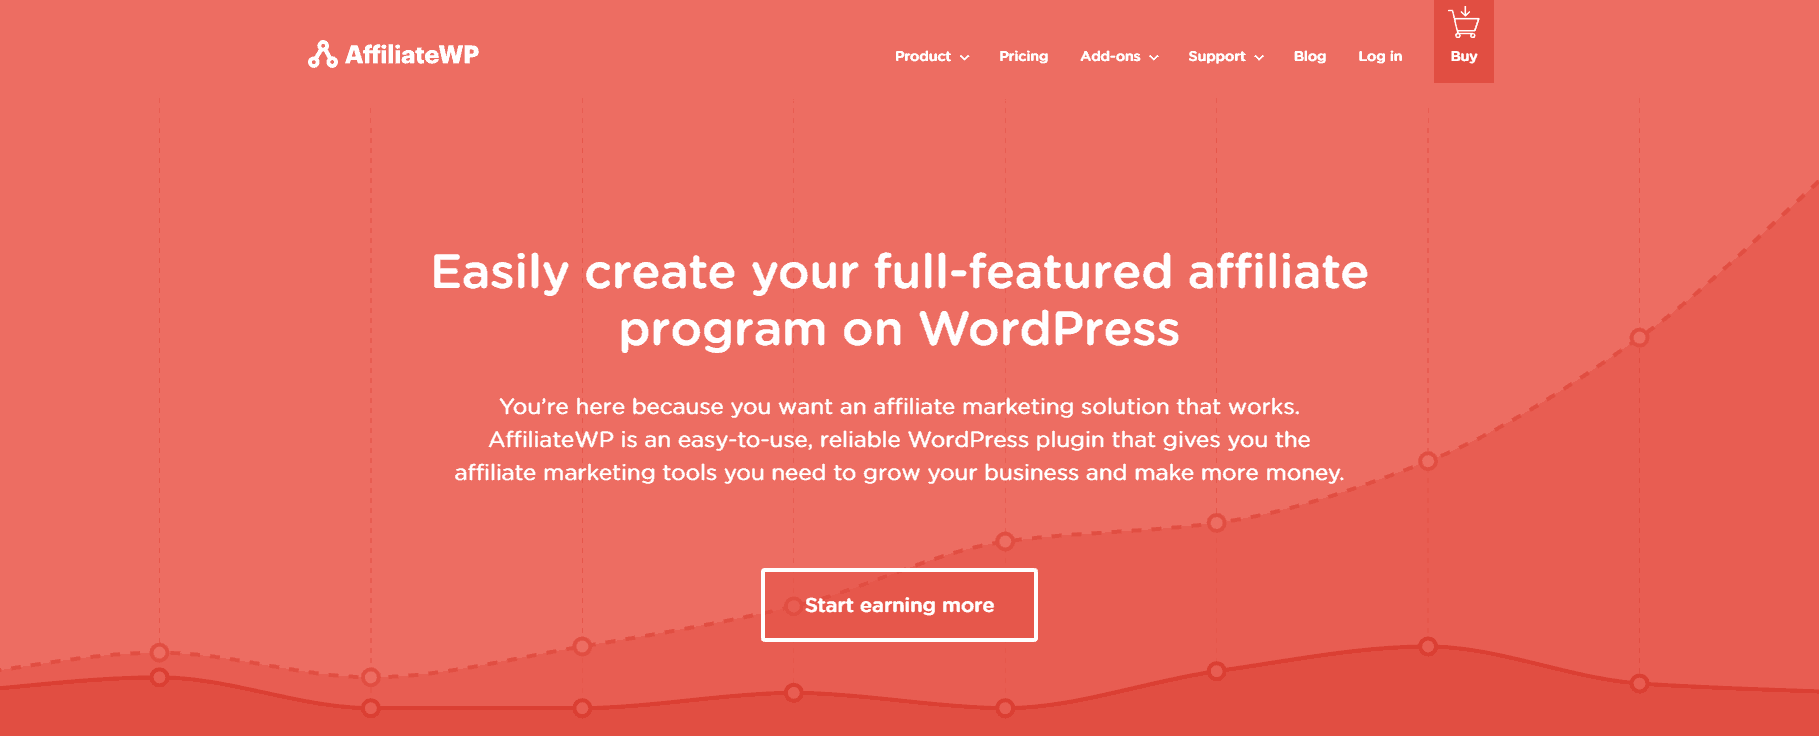 The AffiliateWP WordPress plugin.